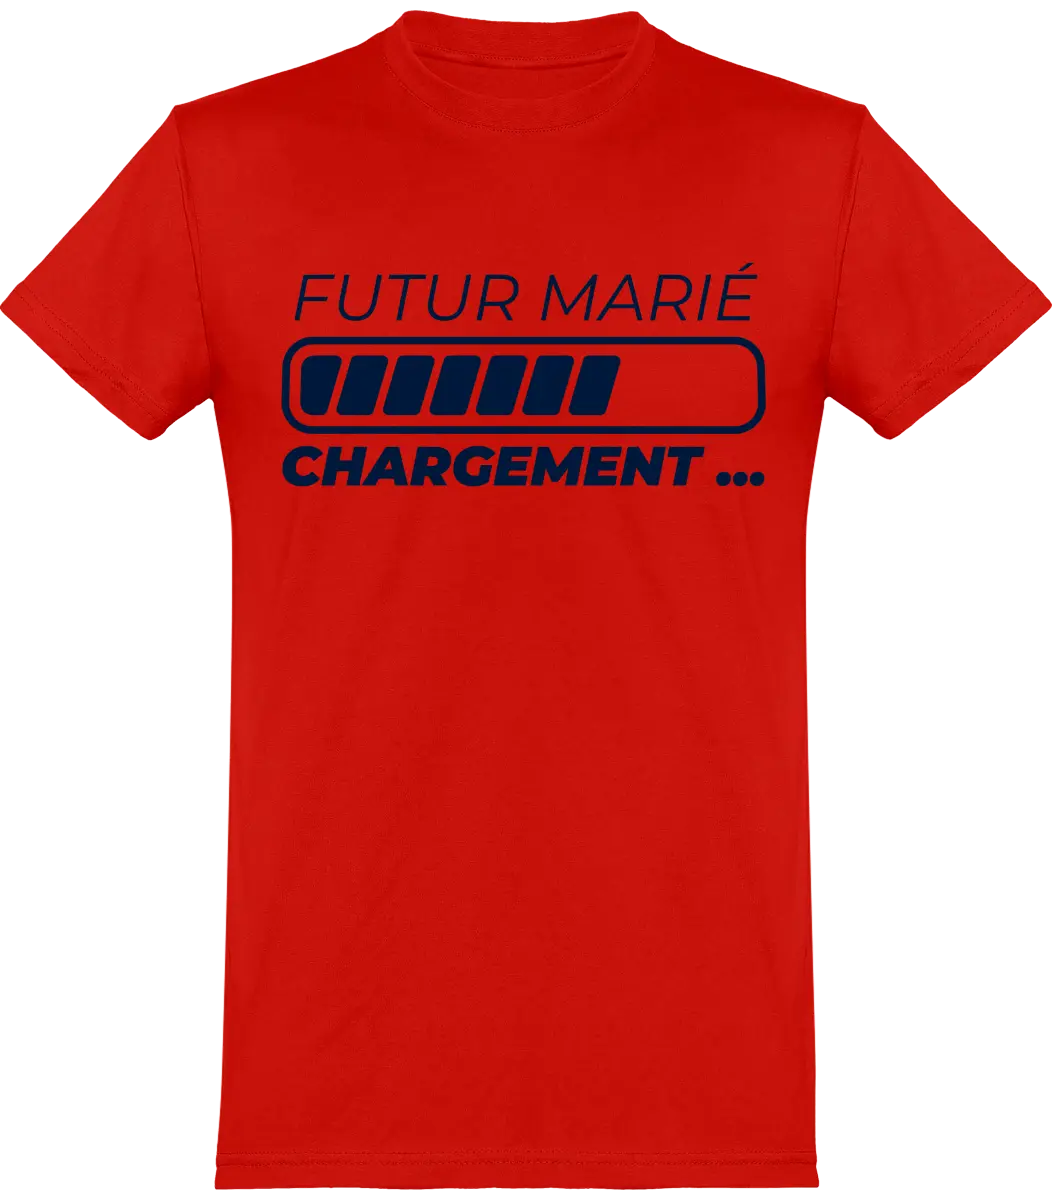 T-shirt EVG "Futur marié chargement" | Mixte - French Humour